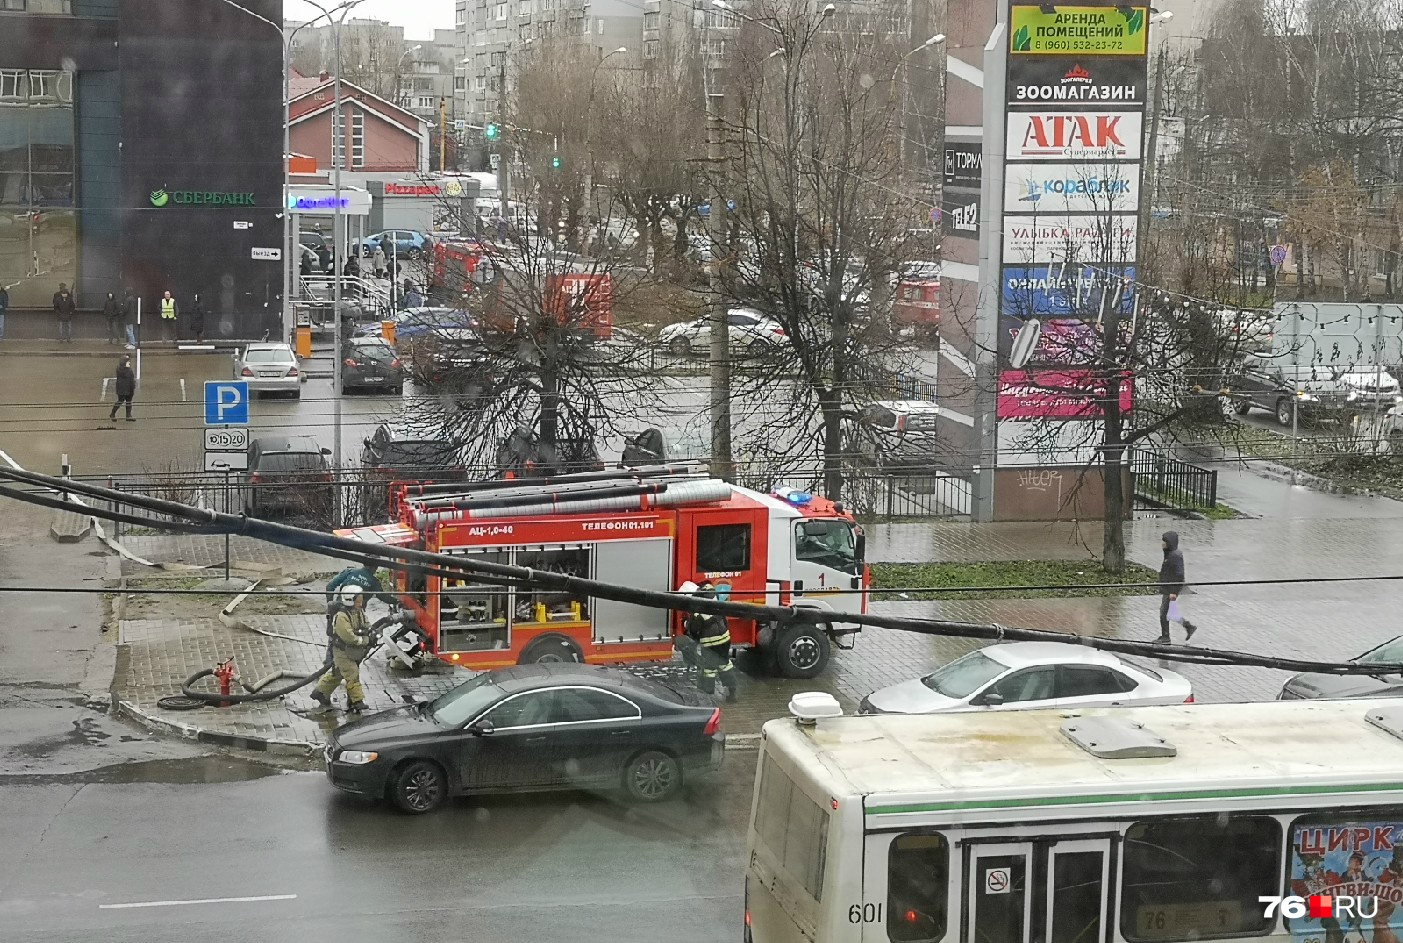 «Спецслужбы едут одна за другой»: из-за чего в Ярославле эвакуировали посетителей торгового центра